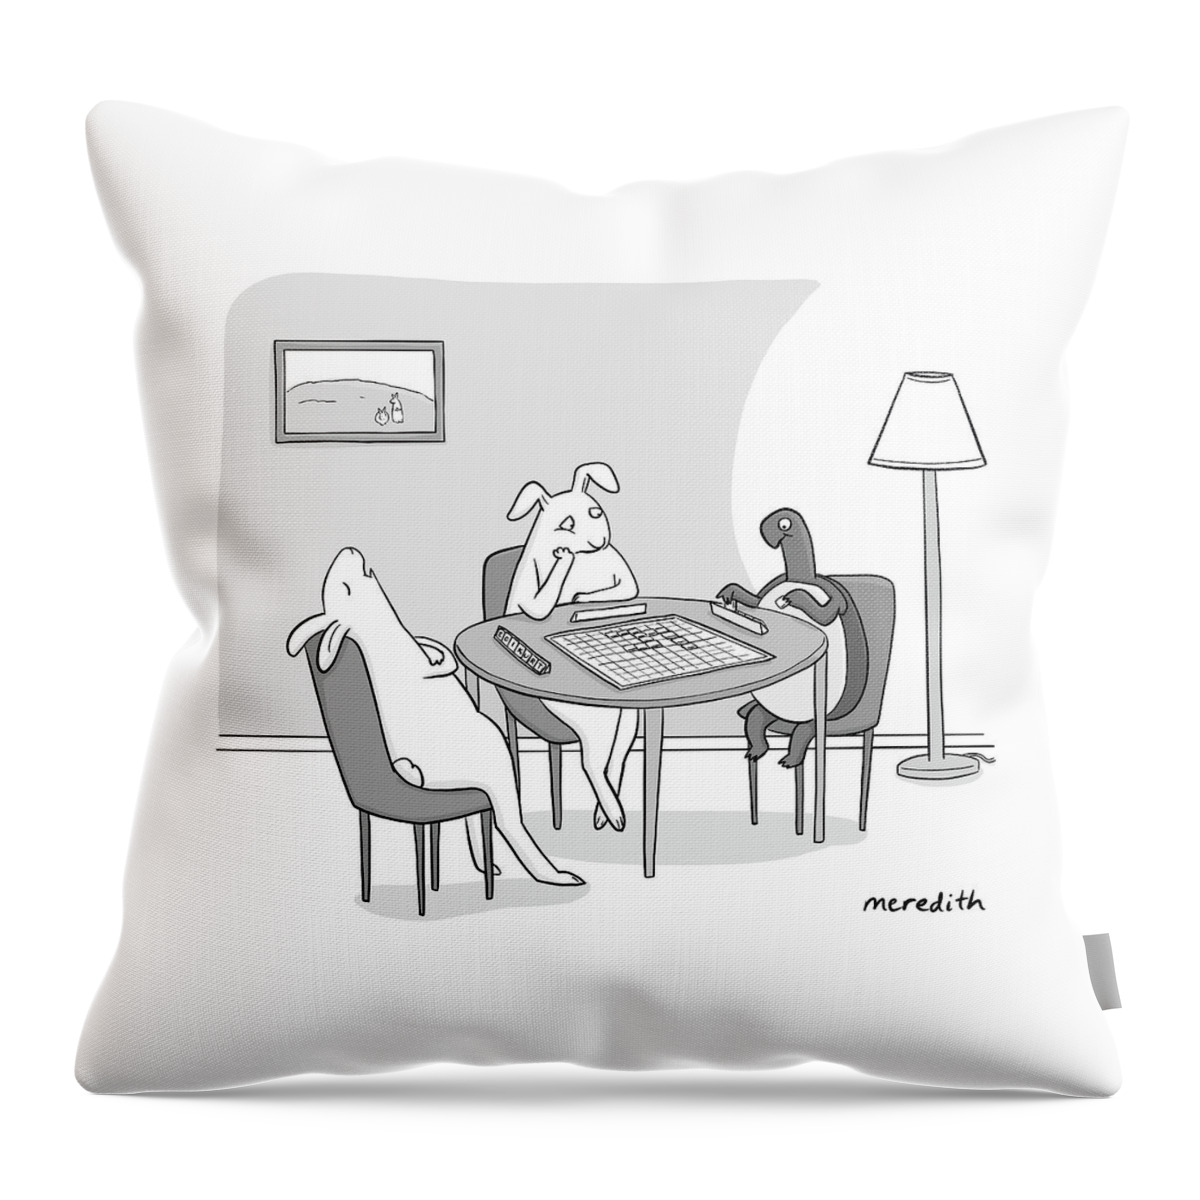 New Yorker December 26, 2022 Throw Pillow